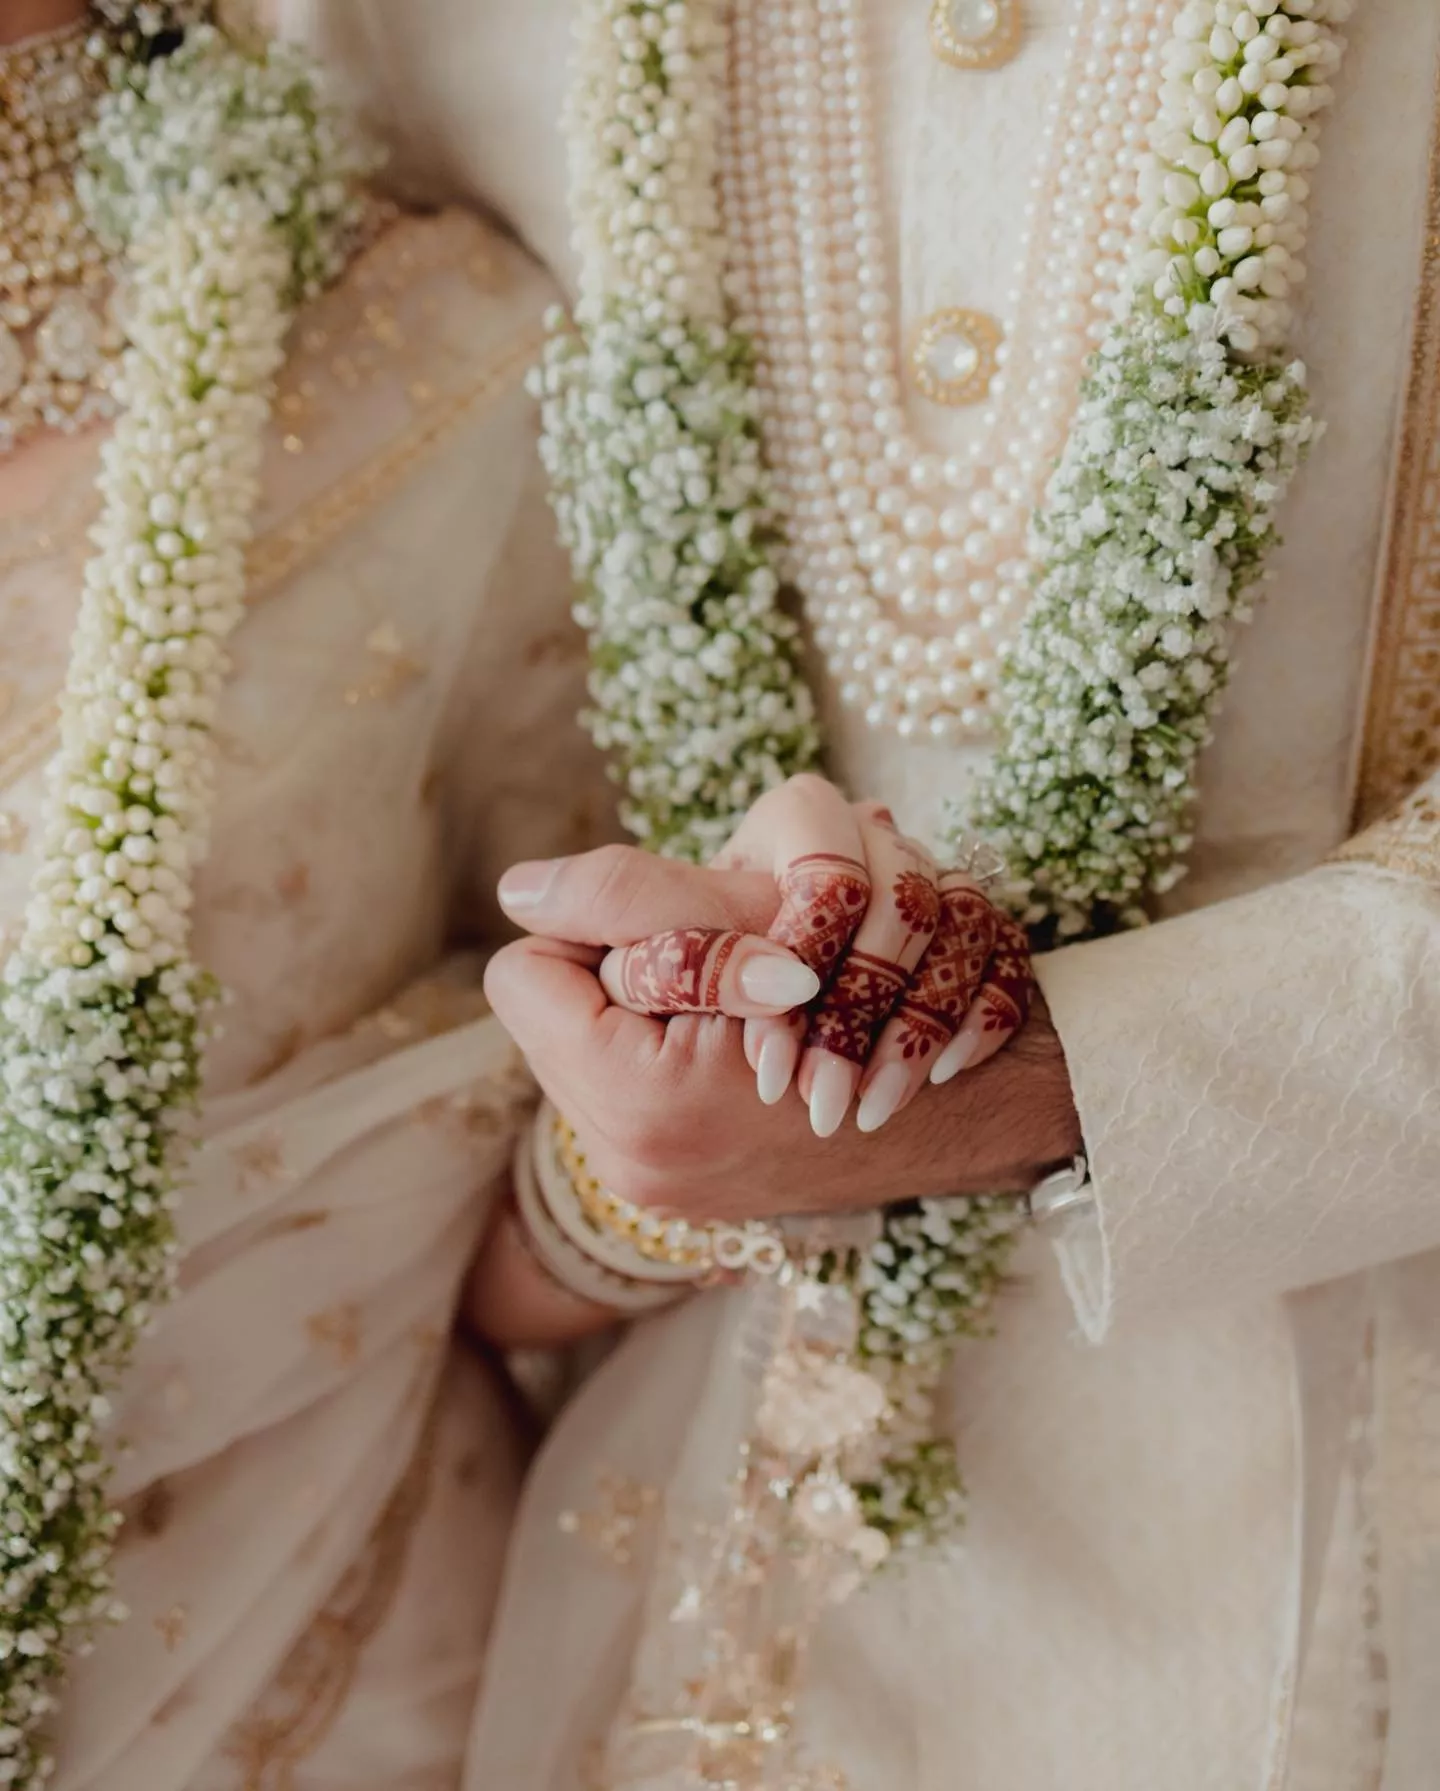 صور وفيديوهات حفل زفاف عليا بهات ورانبير كابور في الهند